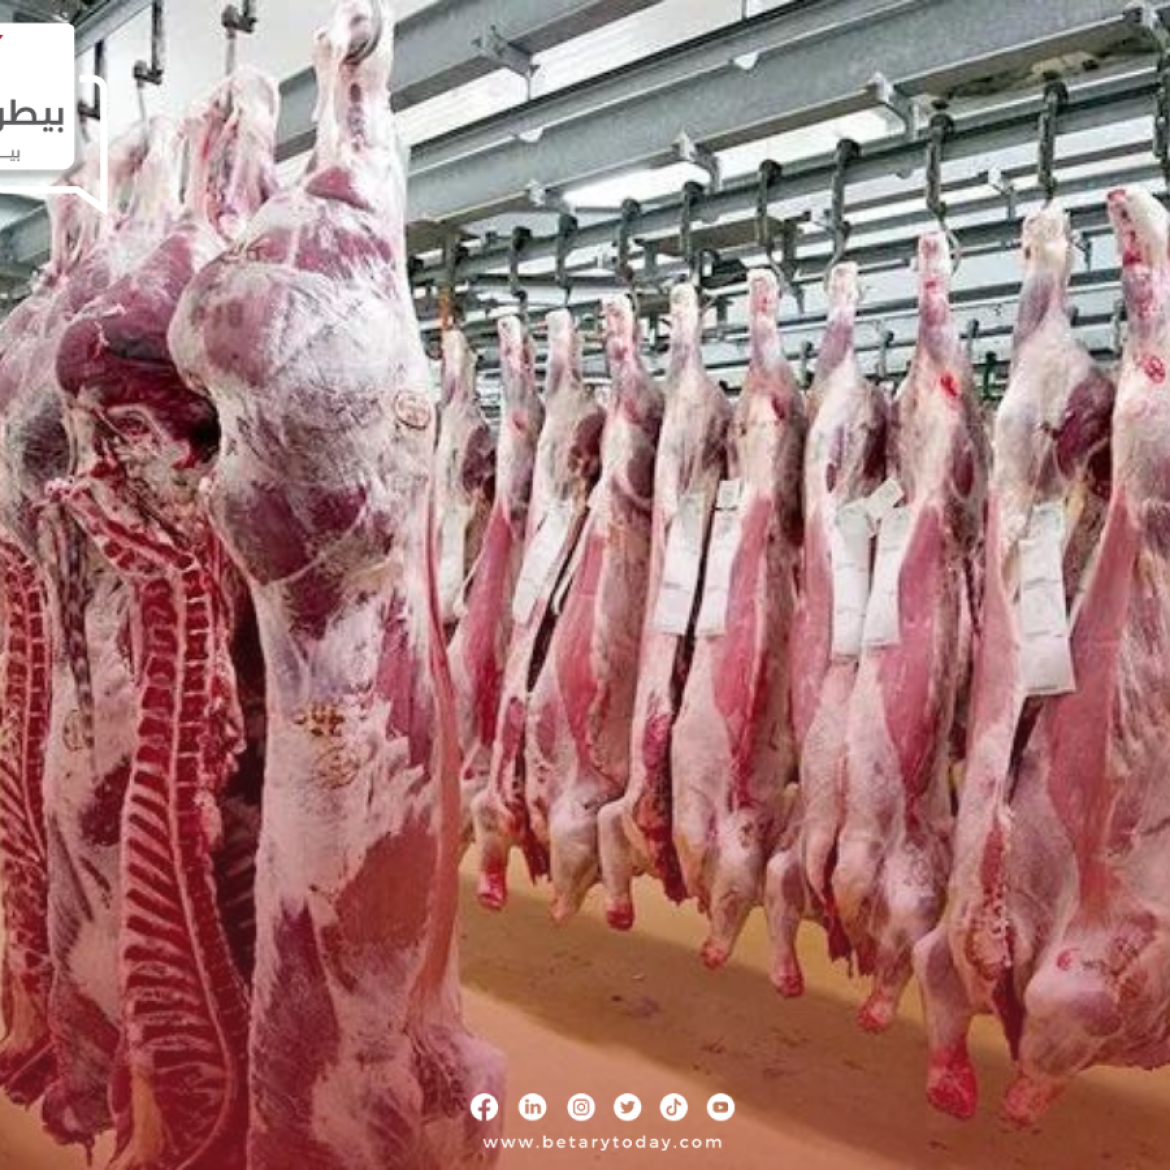 "قبل يومين من عيد الأضحى"... أسعار اللحوم الحمراء البلدي والمستوردة اليوم الجمعة